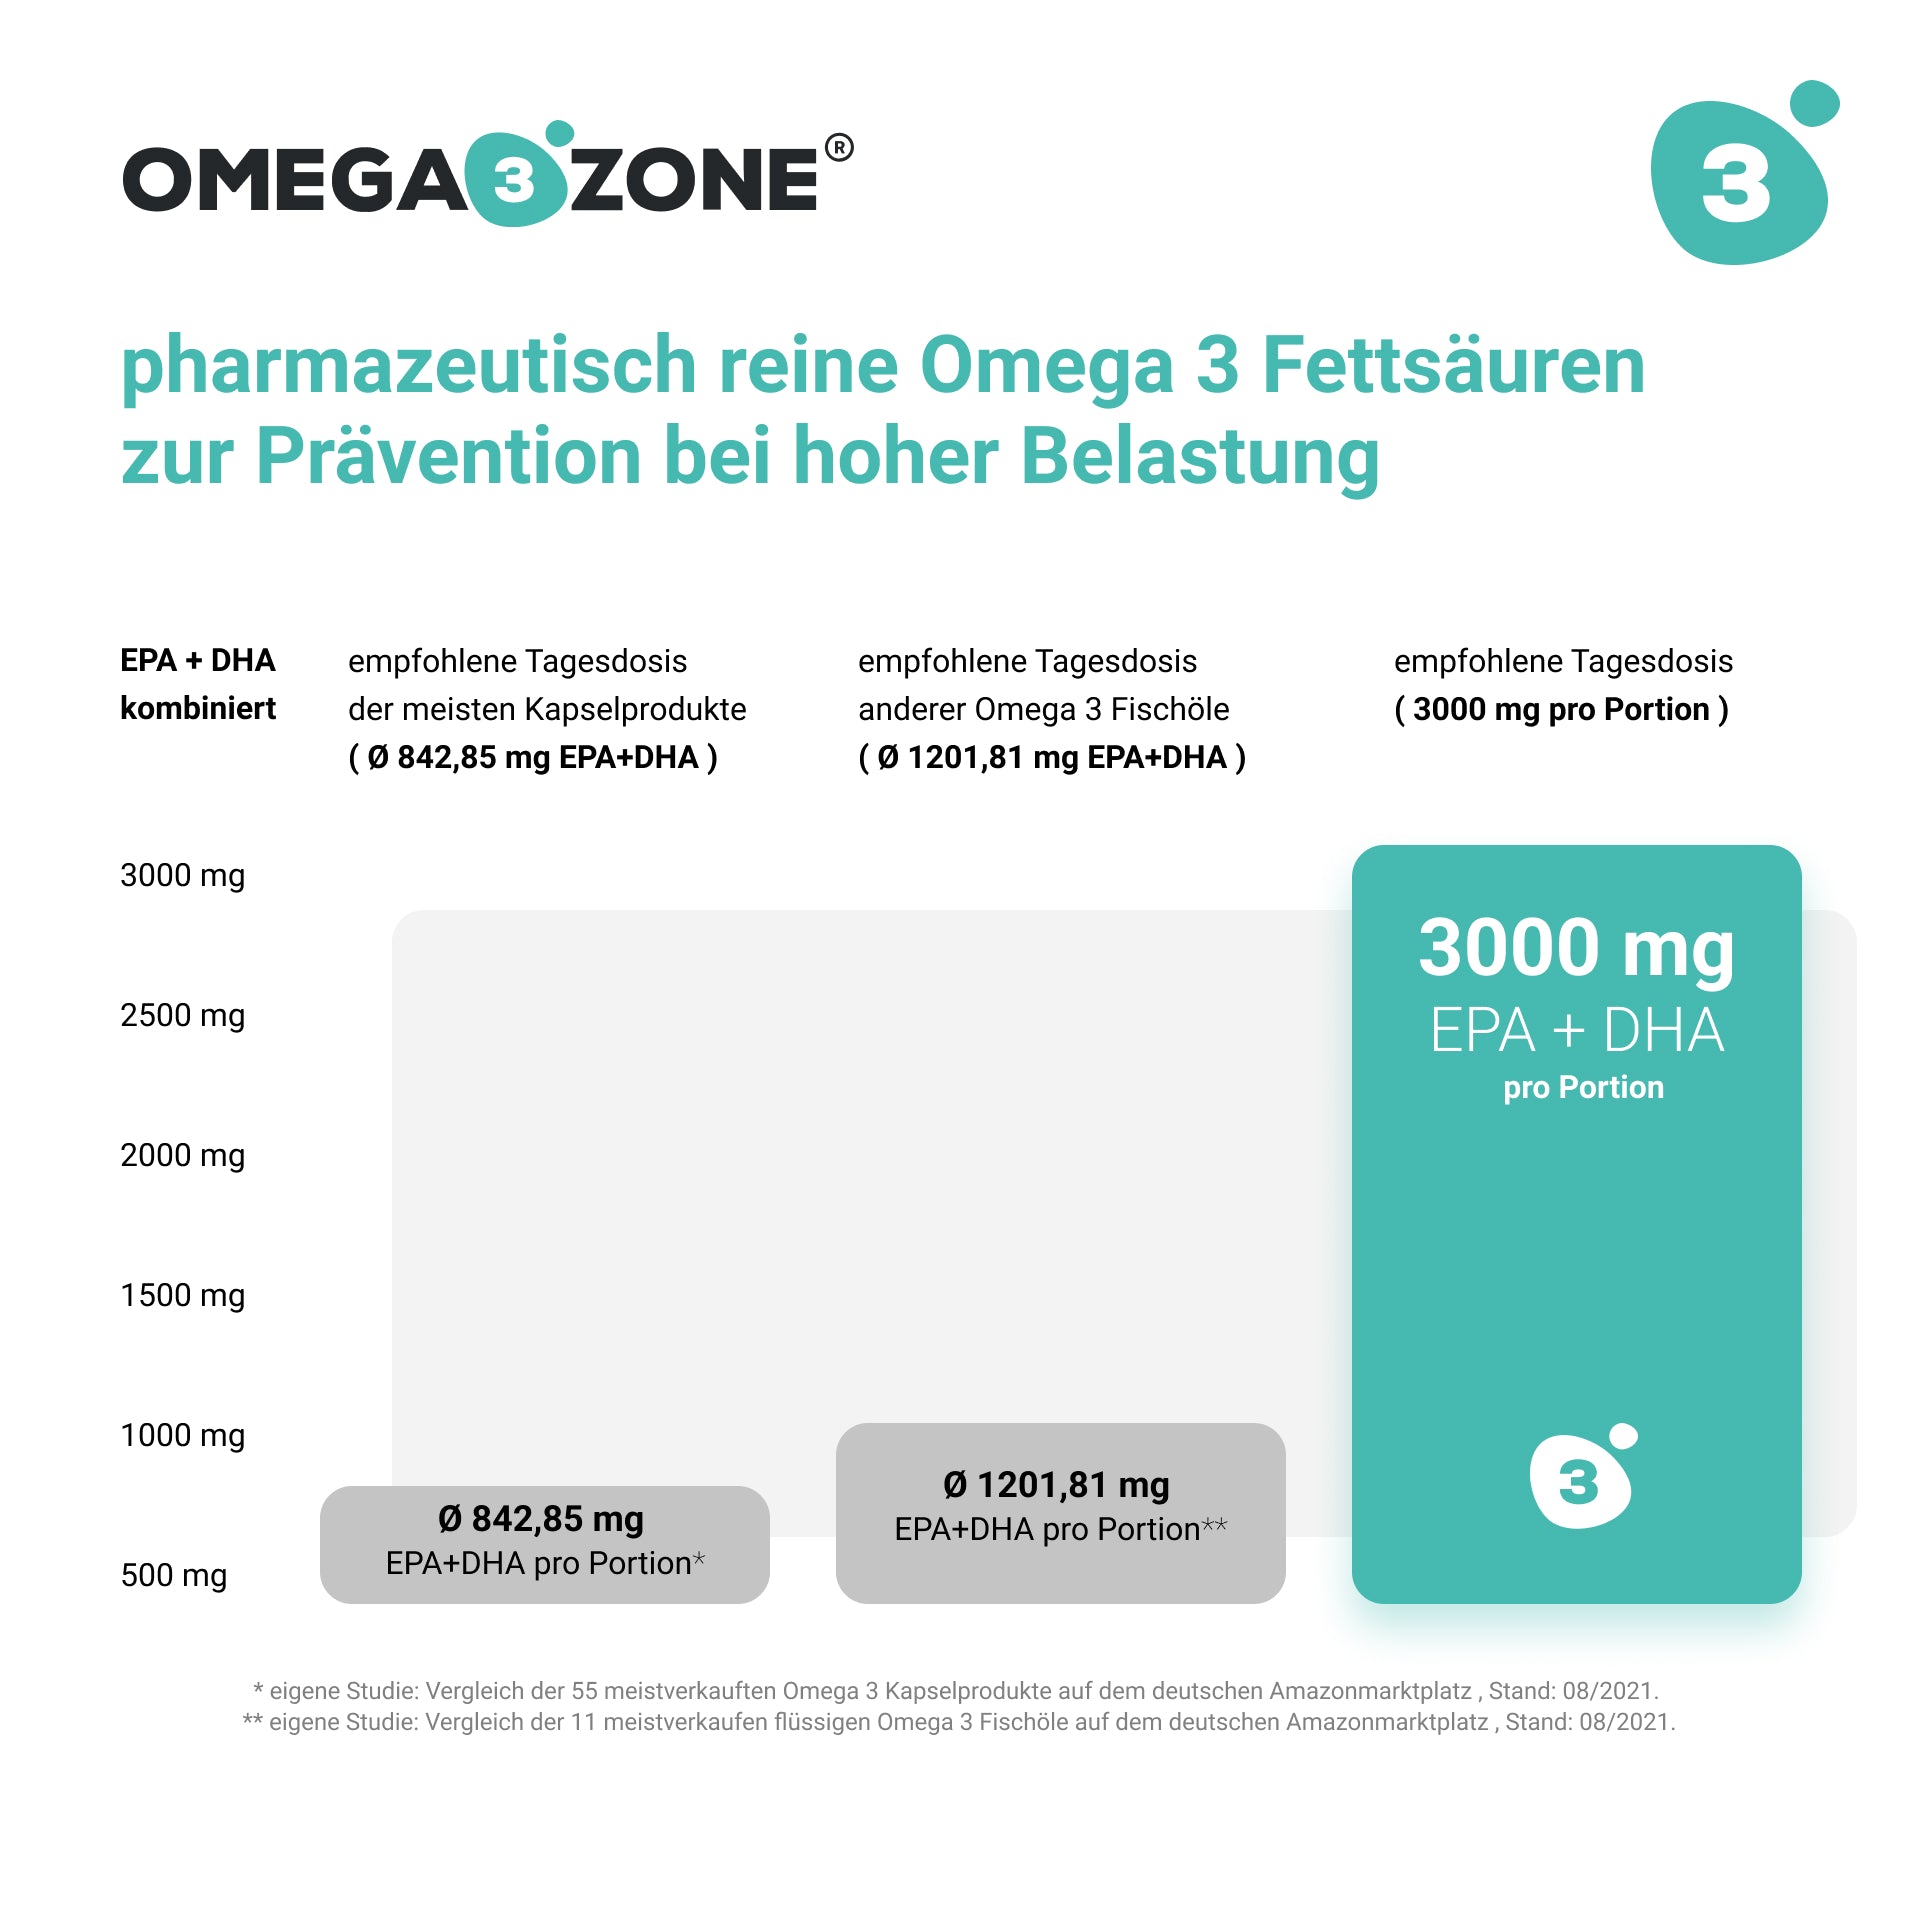 omega3zone PLUS mit Vitamin D3 von der omega3zone GmbH.